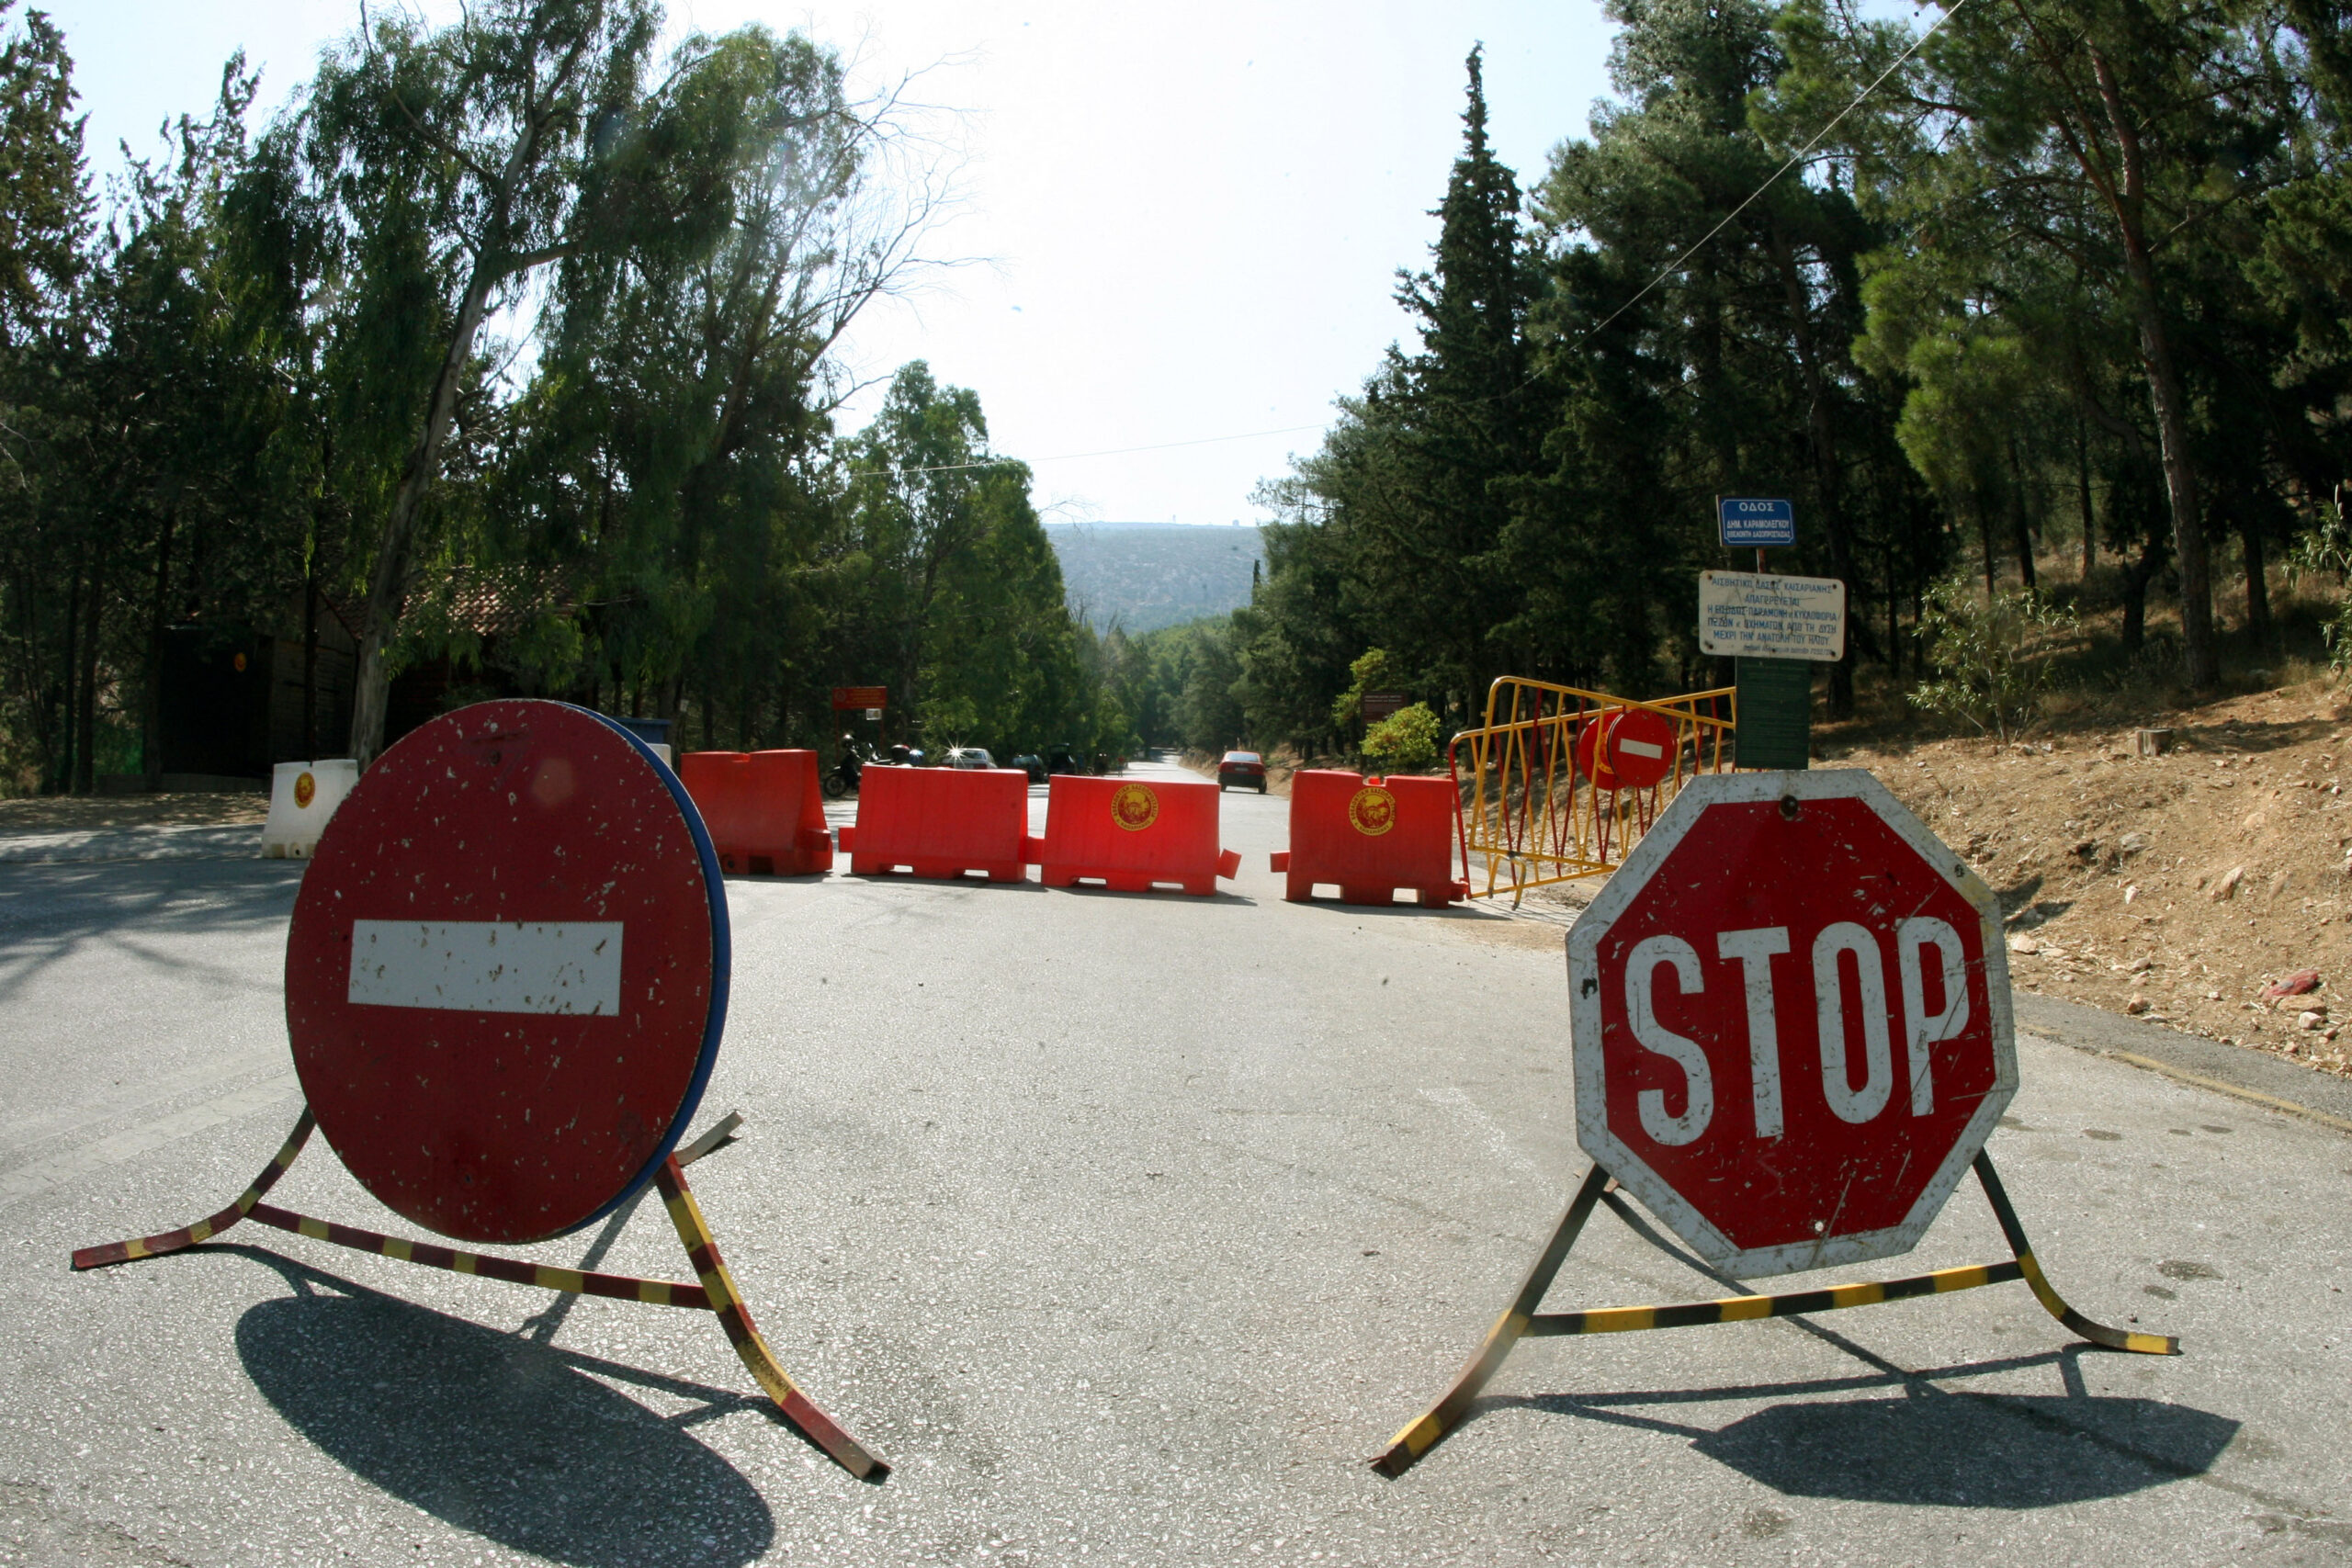 Σέρρες: Απαγόρευση κυκλοφορίας σε περιοχές ευθύνης των Δασαρχείων Σερρών και Νιγρίτας